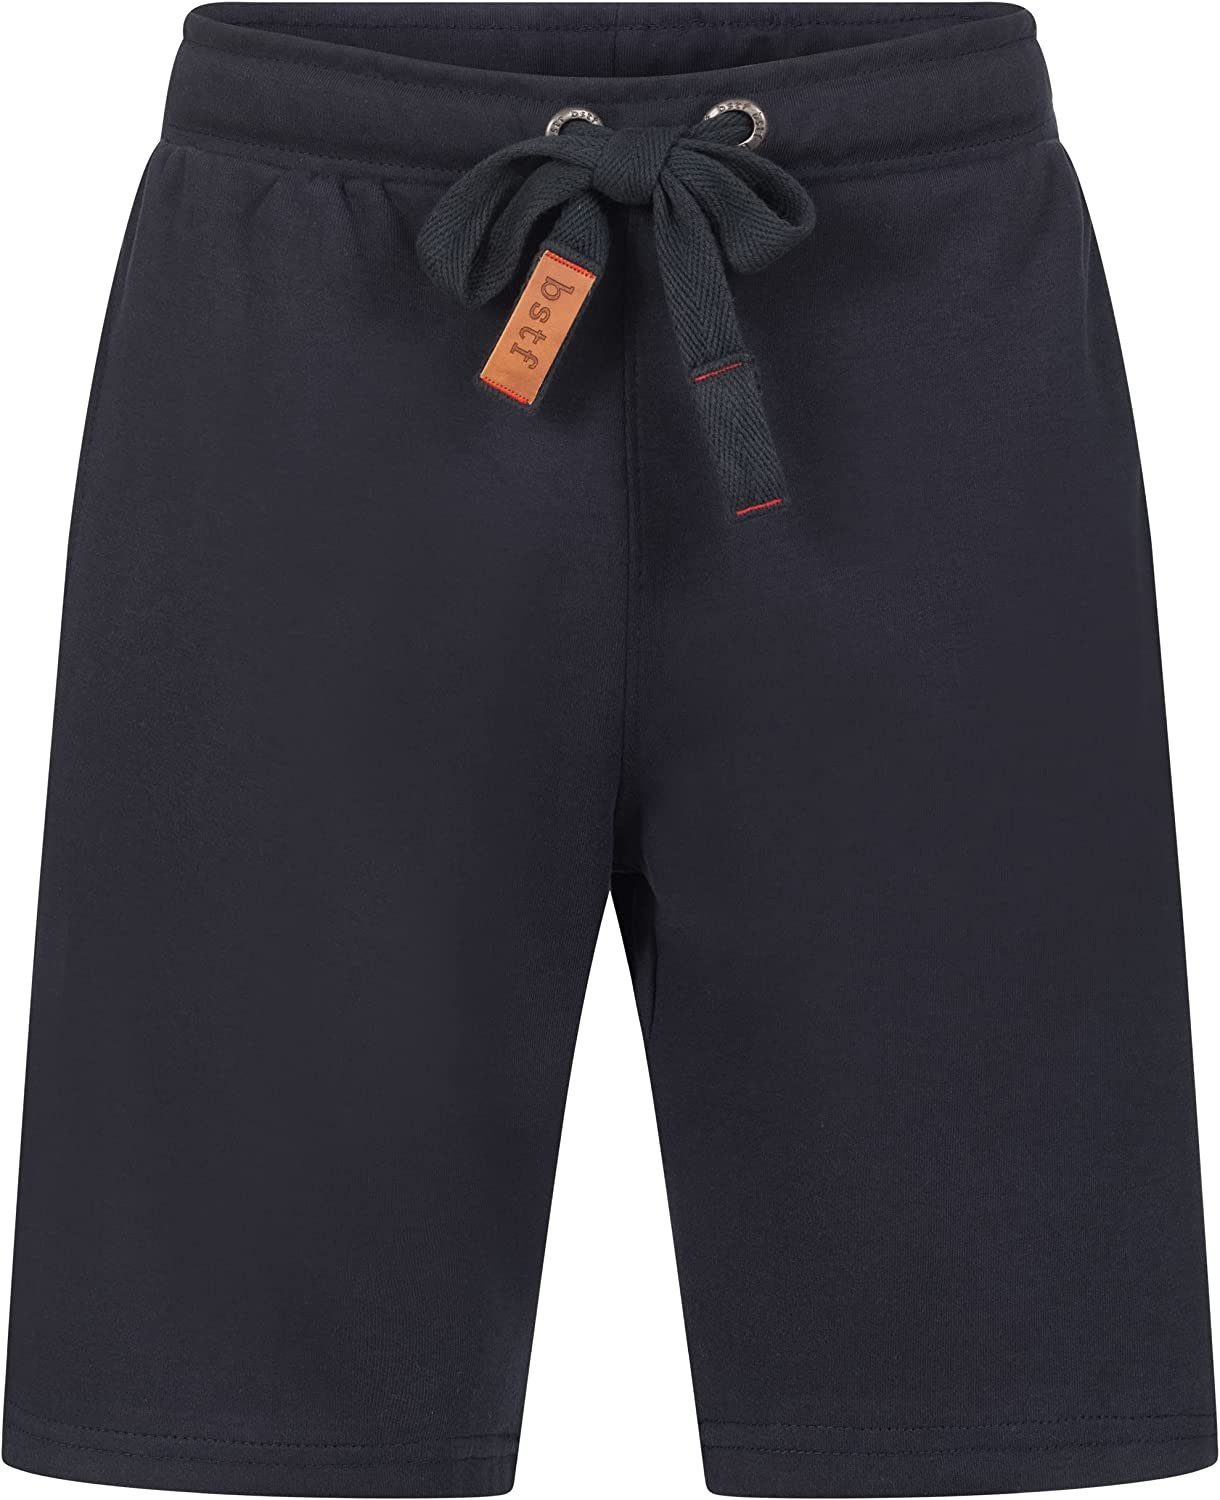 Basisstoff Shorts Wyld Herren Shorts Kurze Hose Bermuda aus Baumwolle Dunkelblau